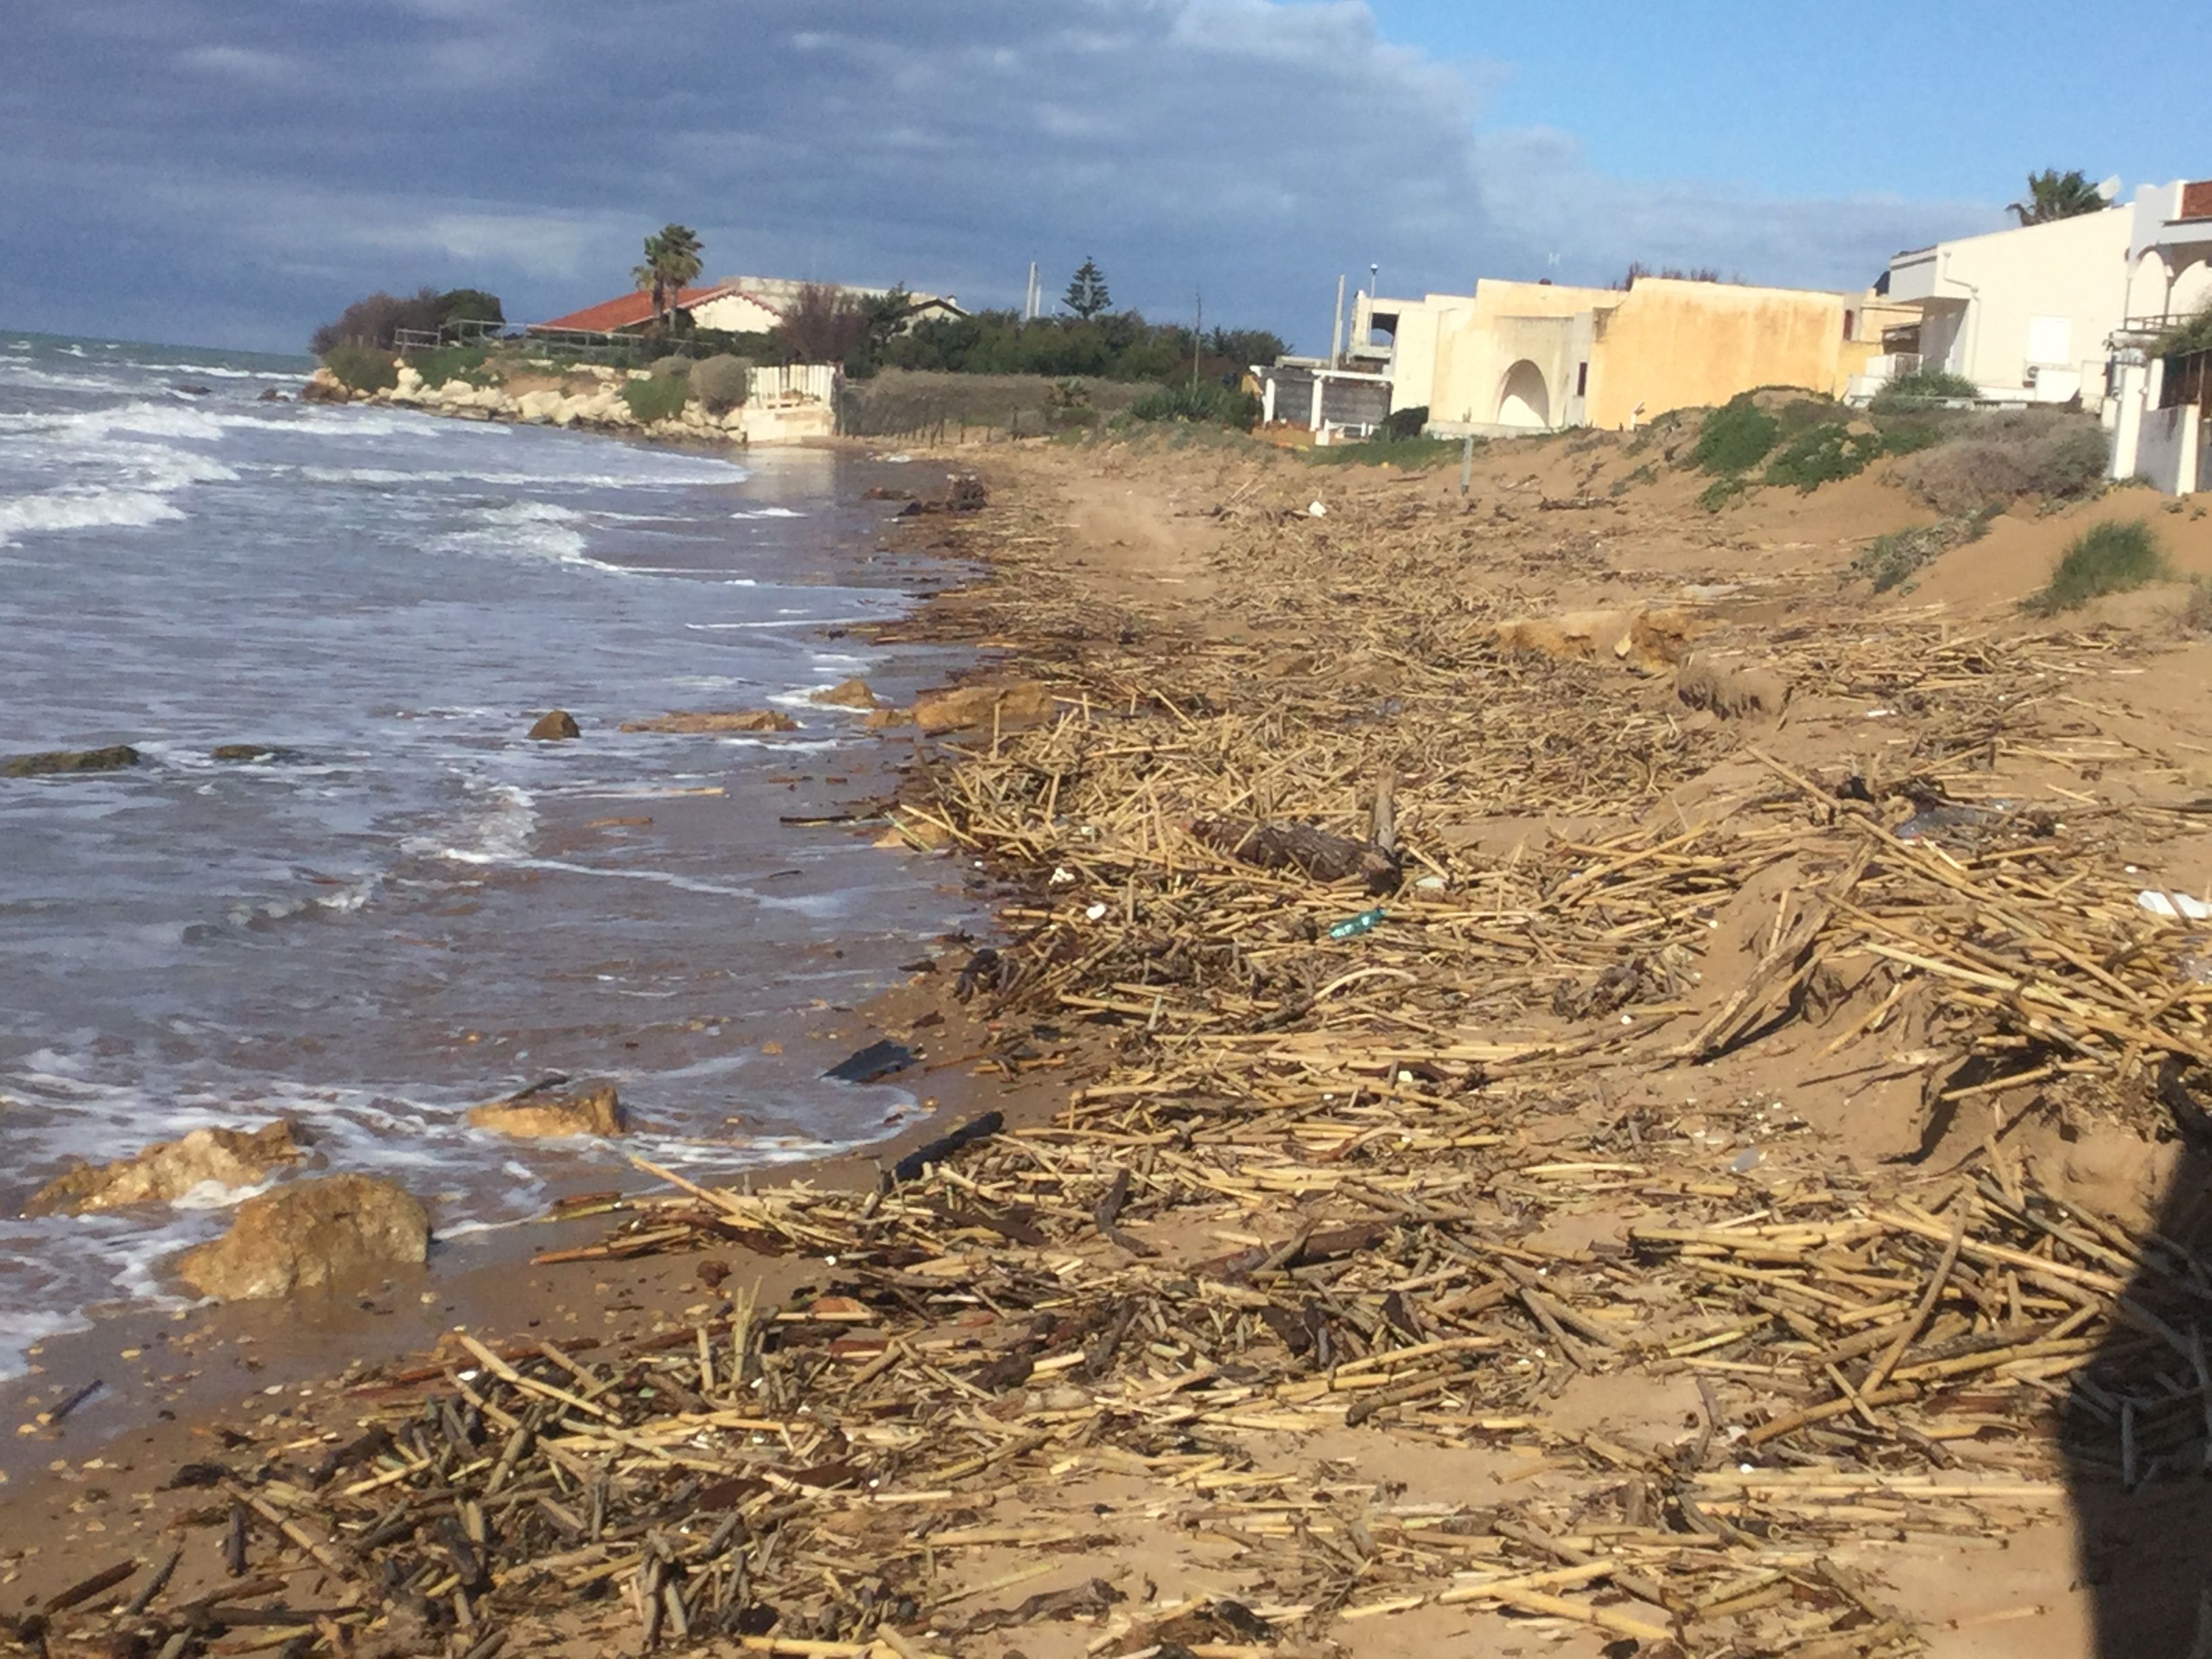  Salvate la spiaggia del Palmento: canne e tronchi, è un disastro! FOTOGALLERY